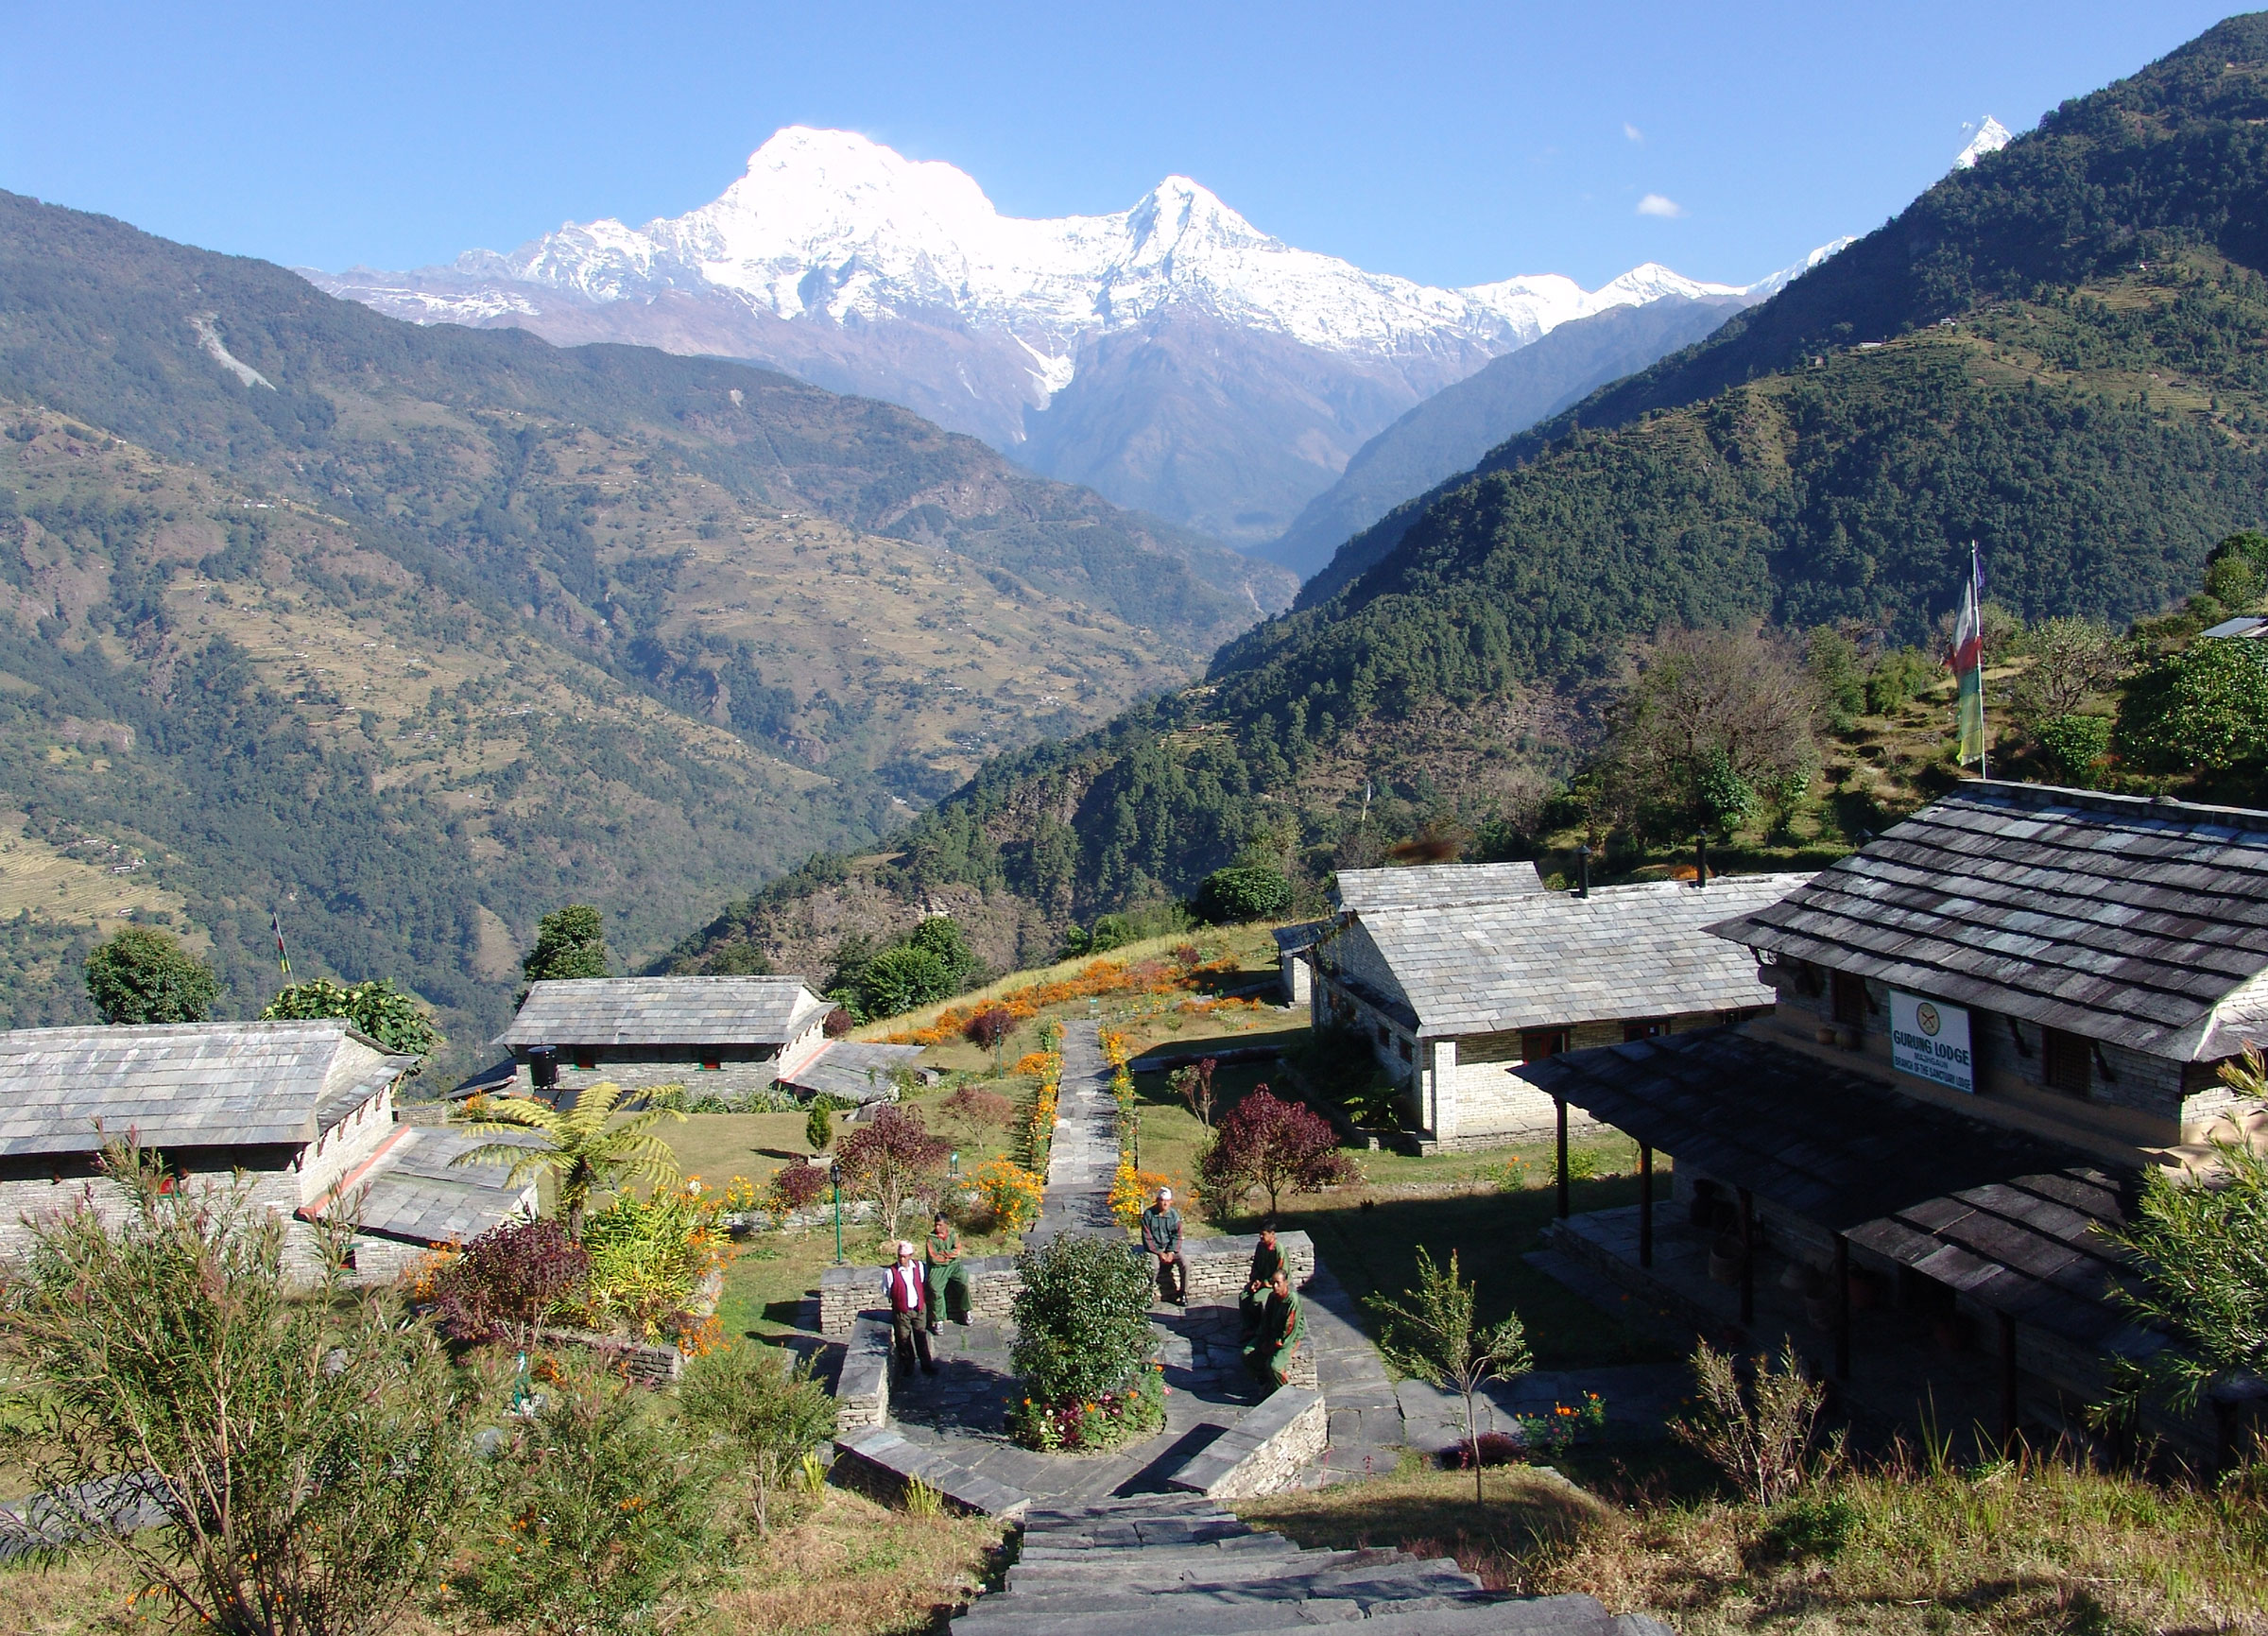 Ker & Downey Nepal Mountain Lodges - hiking in Nepal